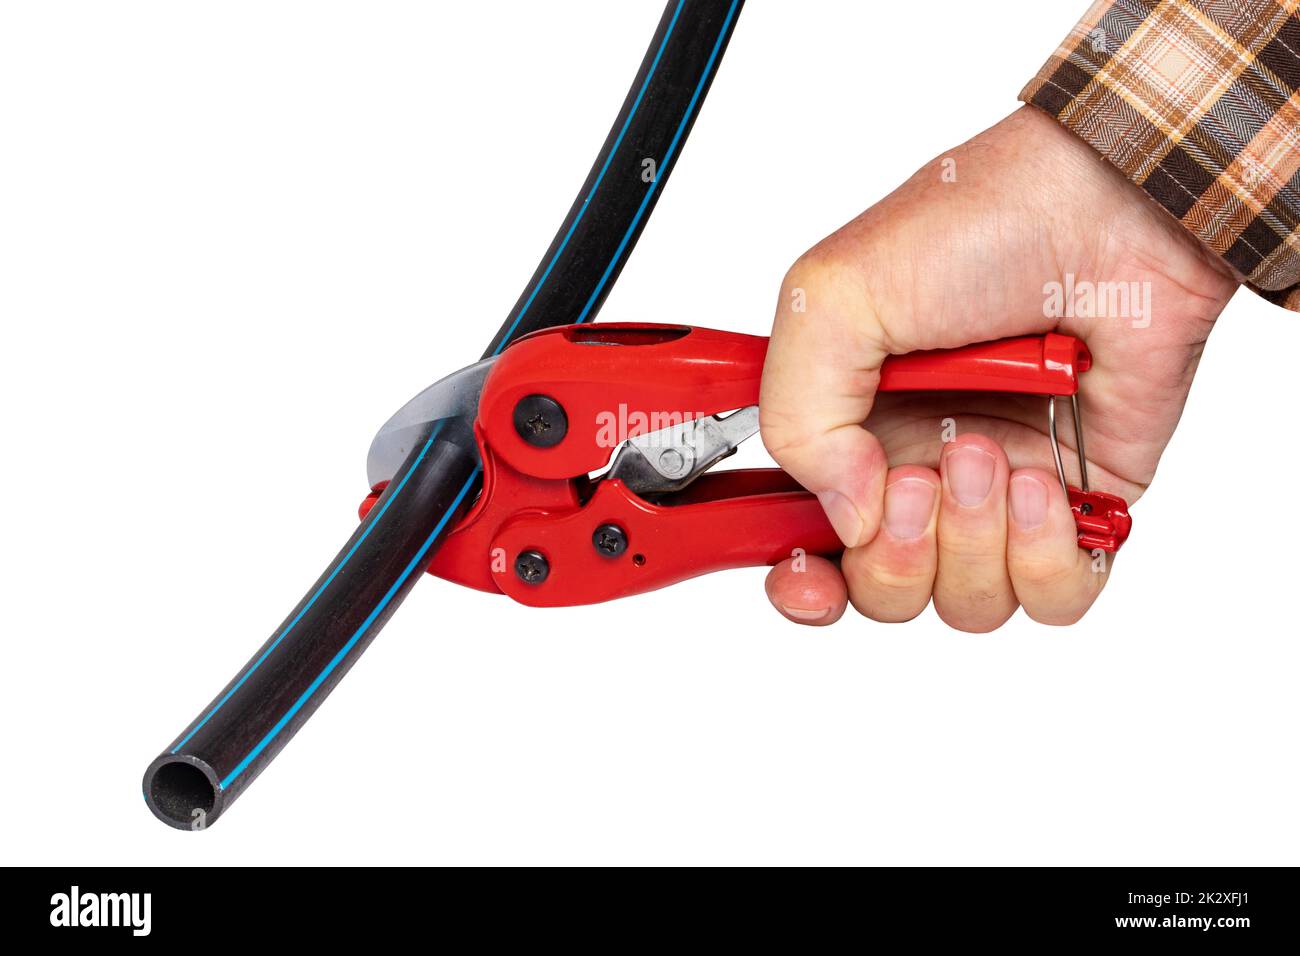 Klempnerwerkzeuge isoliert. Ein Mann schneidet ein Stück PE-Druckrohr oder Wasserrohr mit einem roten pvc-Rohrabschneider. Beschneidungspfad. Trink- und Versorgungswassersysteme. Stockfoto